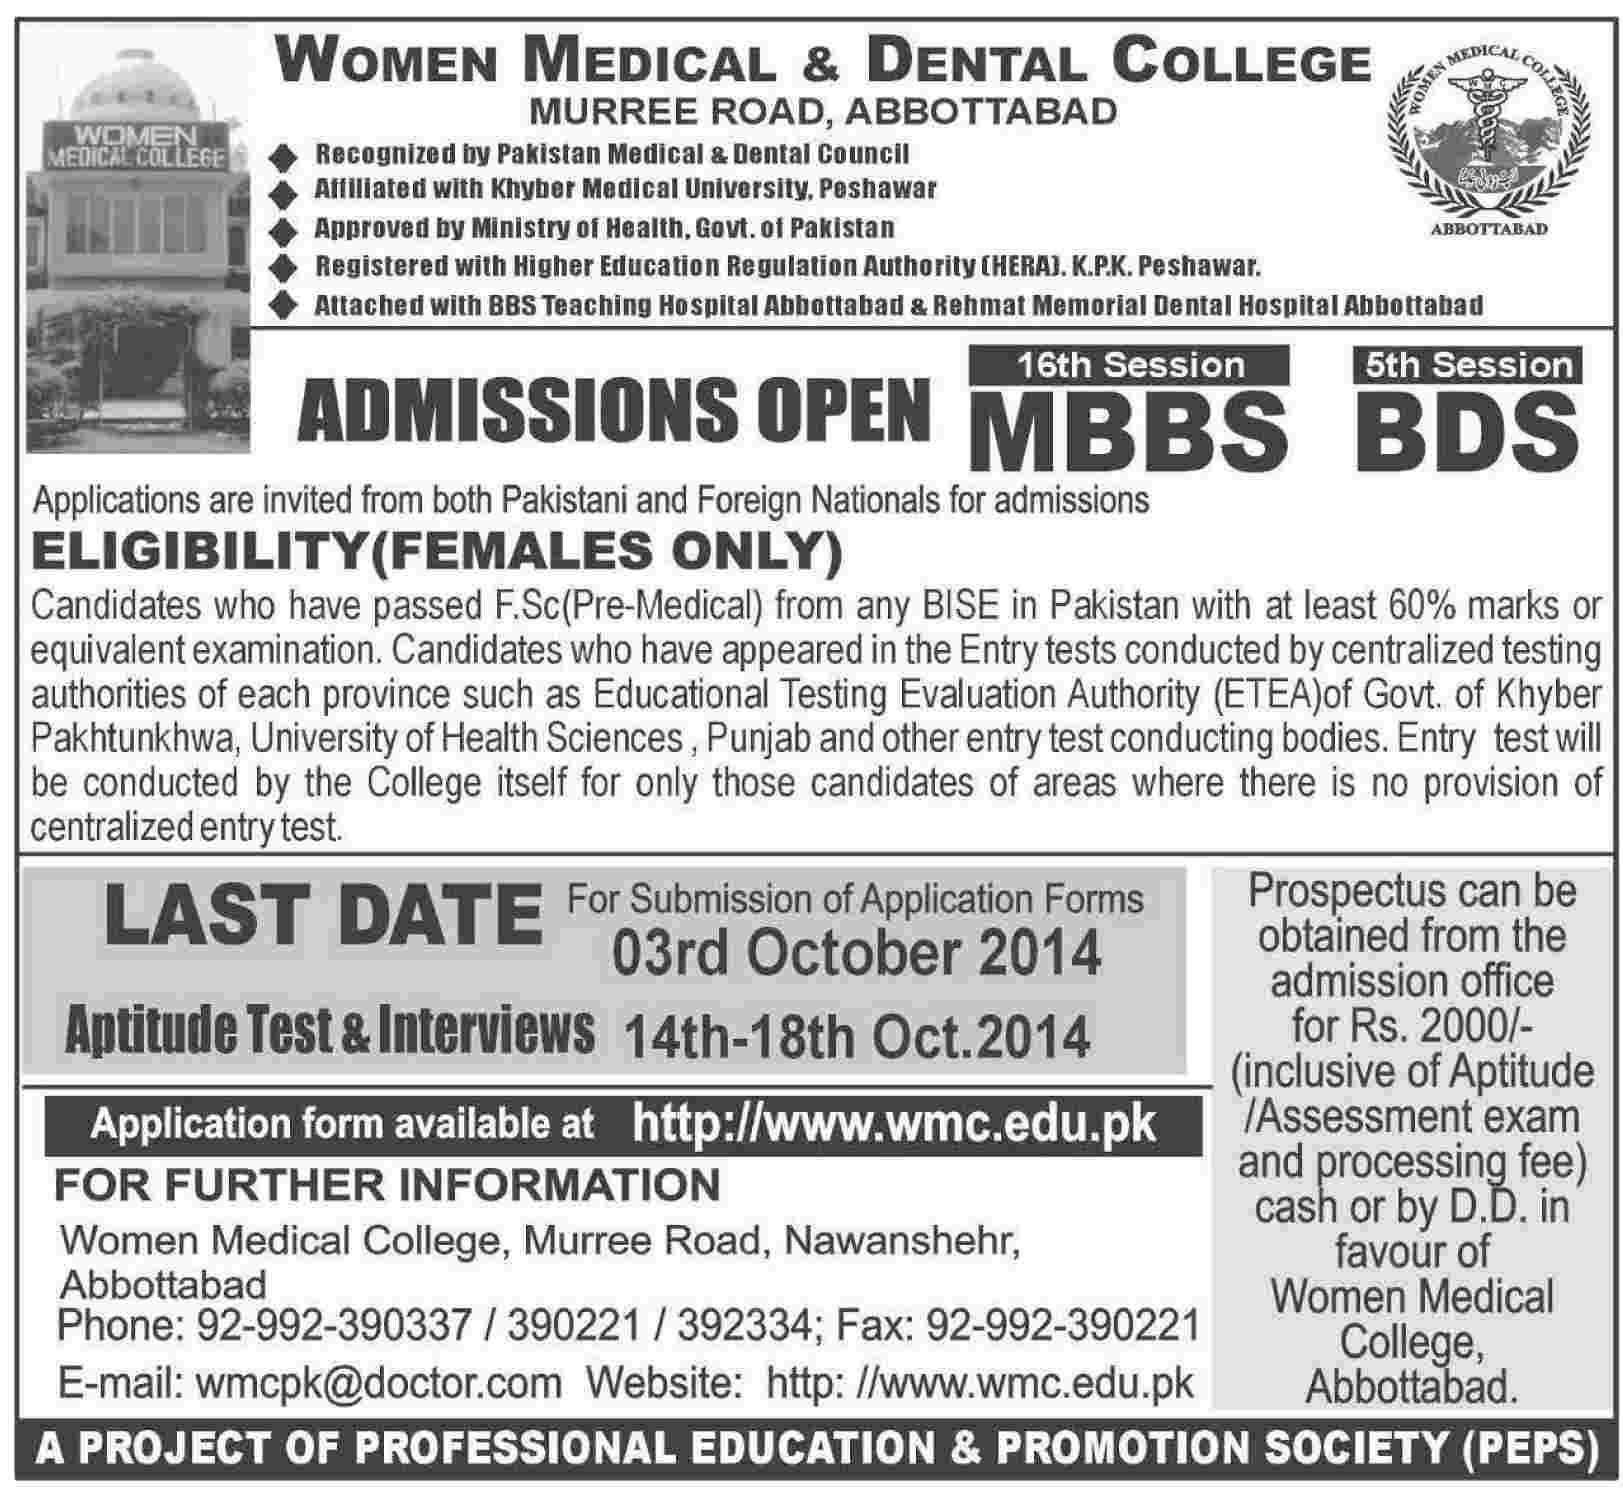 Women Medical College & Dental College Abbottabad Admission Notice 2014 for Bachelor of Dental Surgery (BDS), Bachelor of Medicine, Bachelor of Surgery (MBBS)